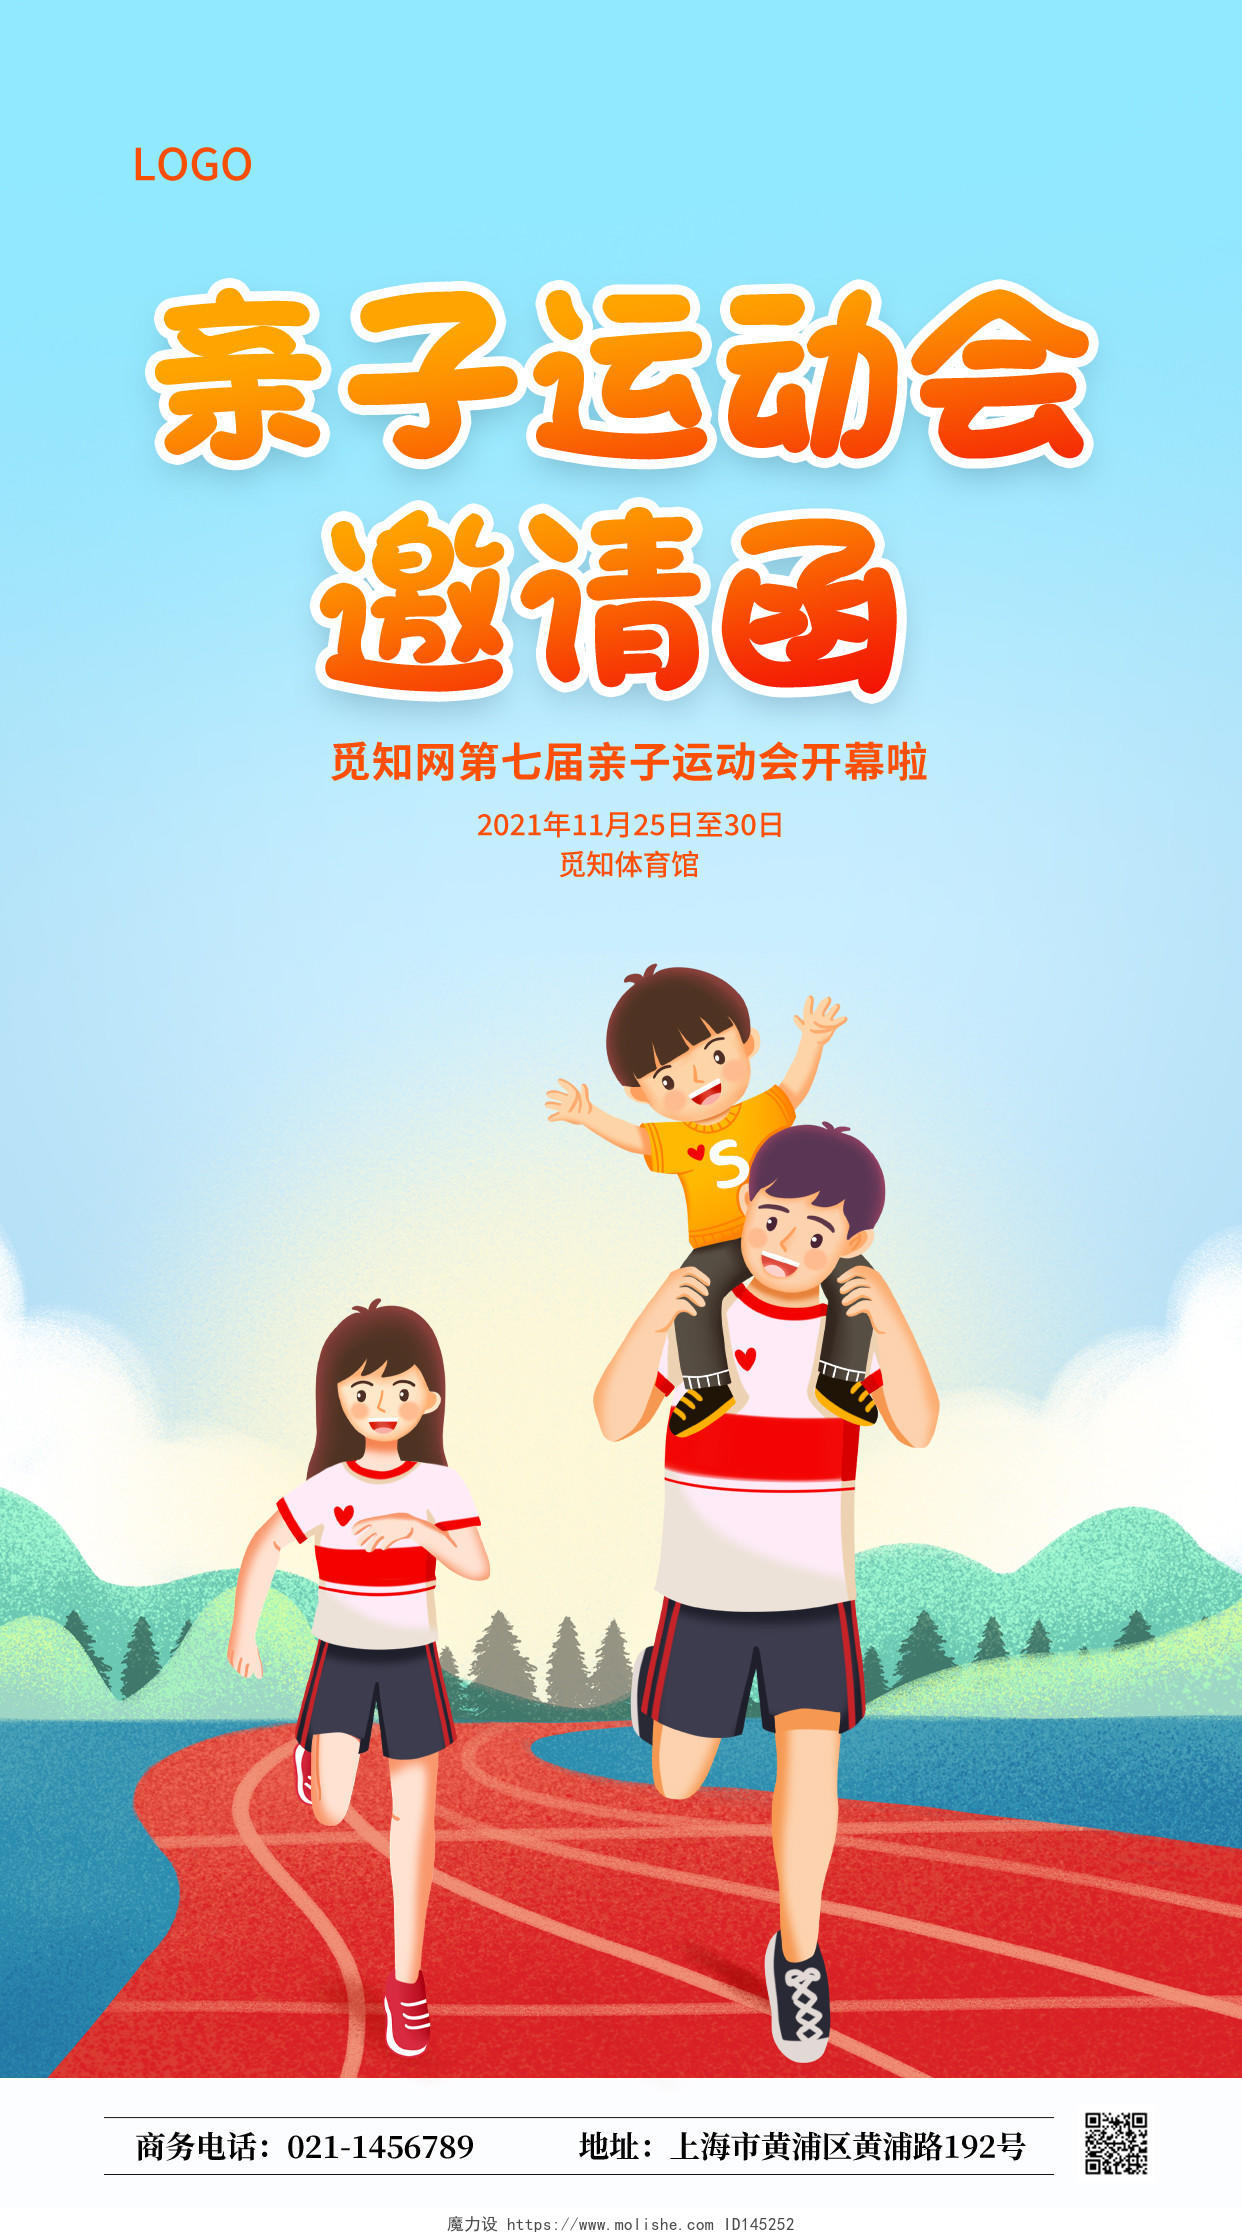 卡通插画幼儿园亲子运动会邀请函ui手机宣传海报